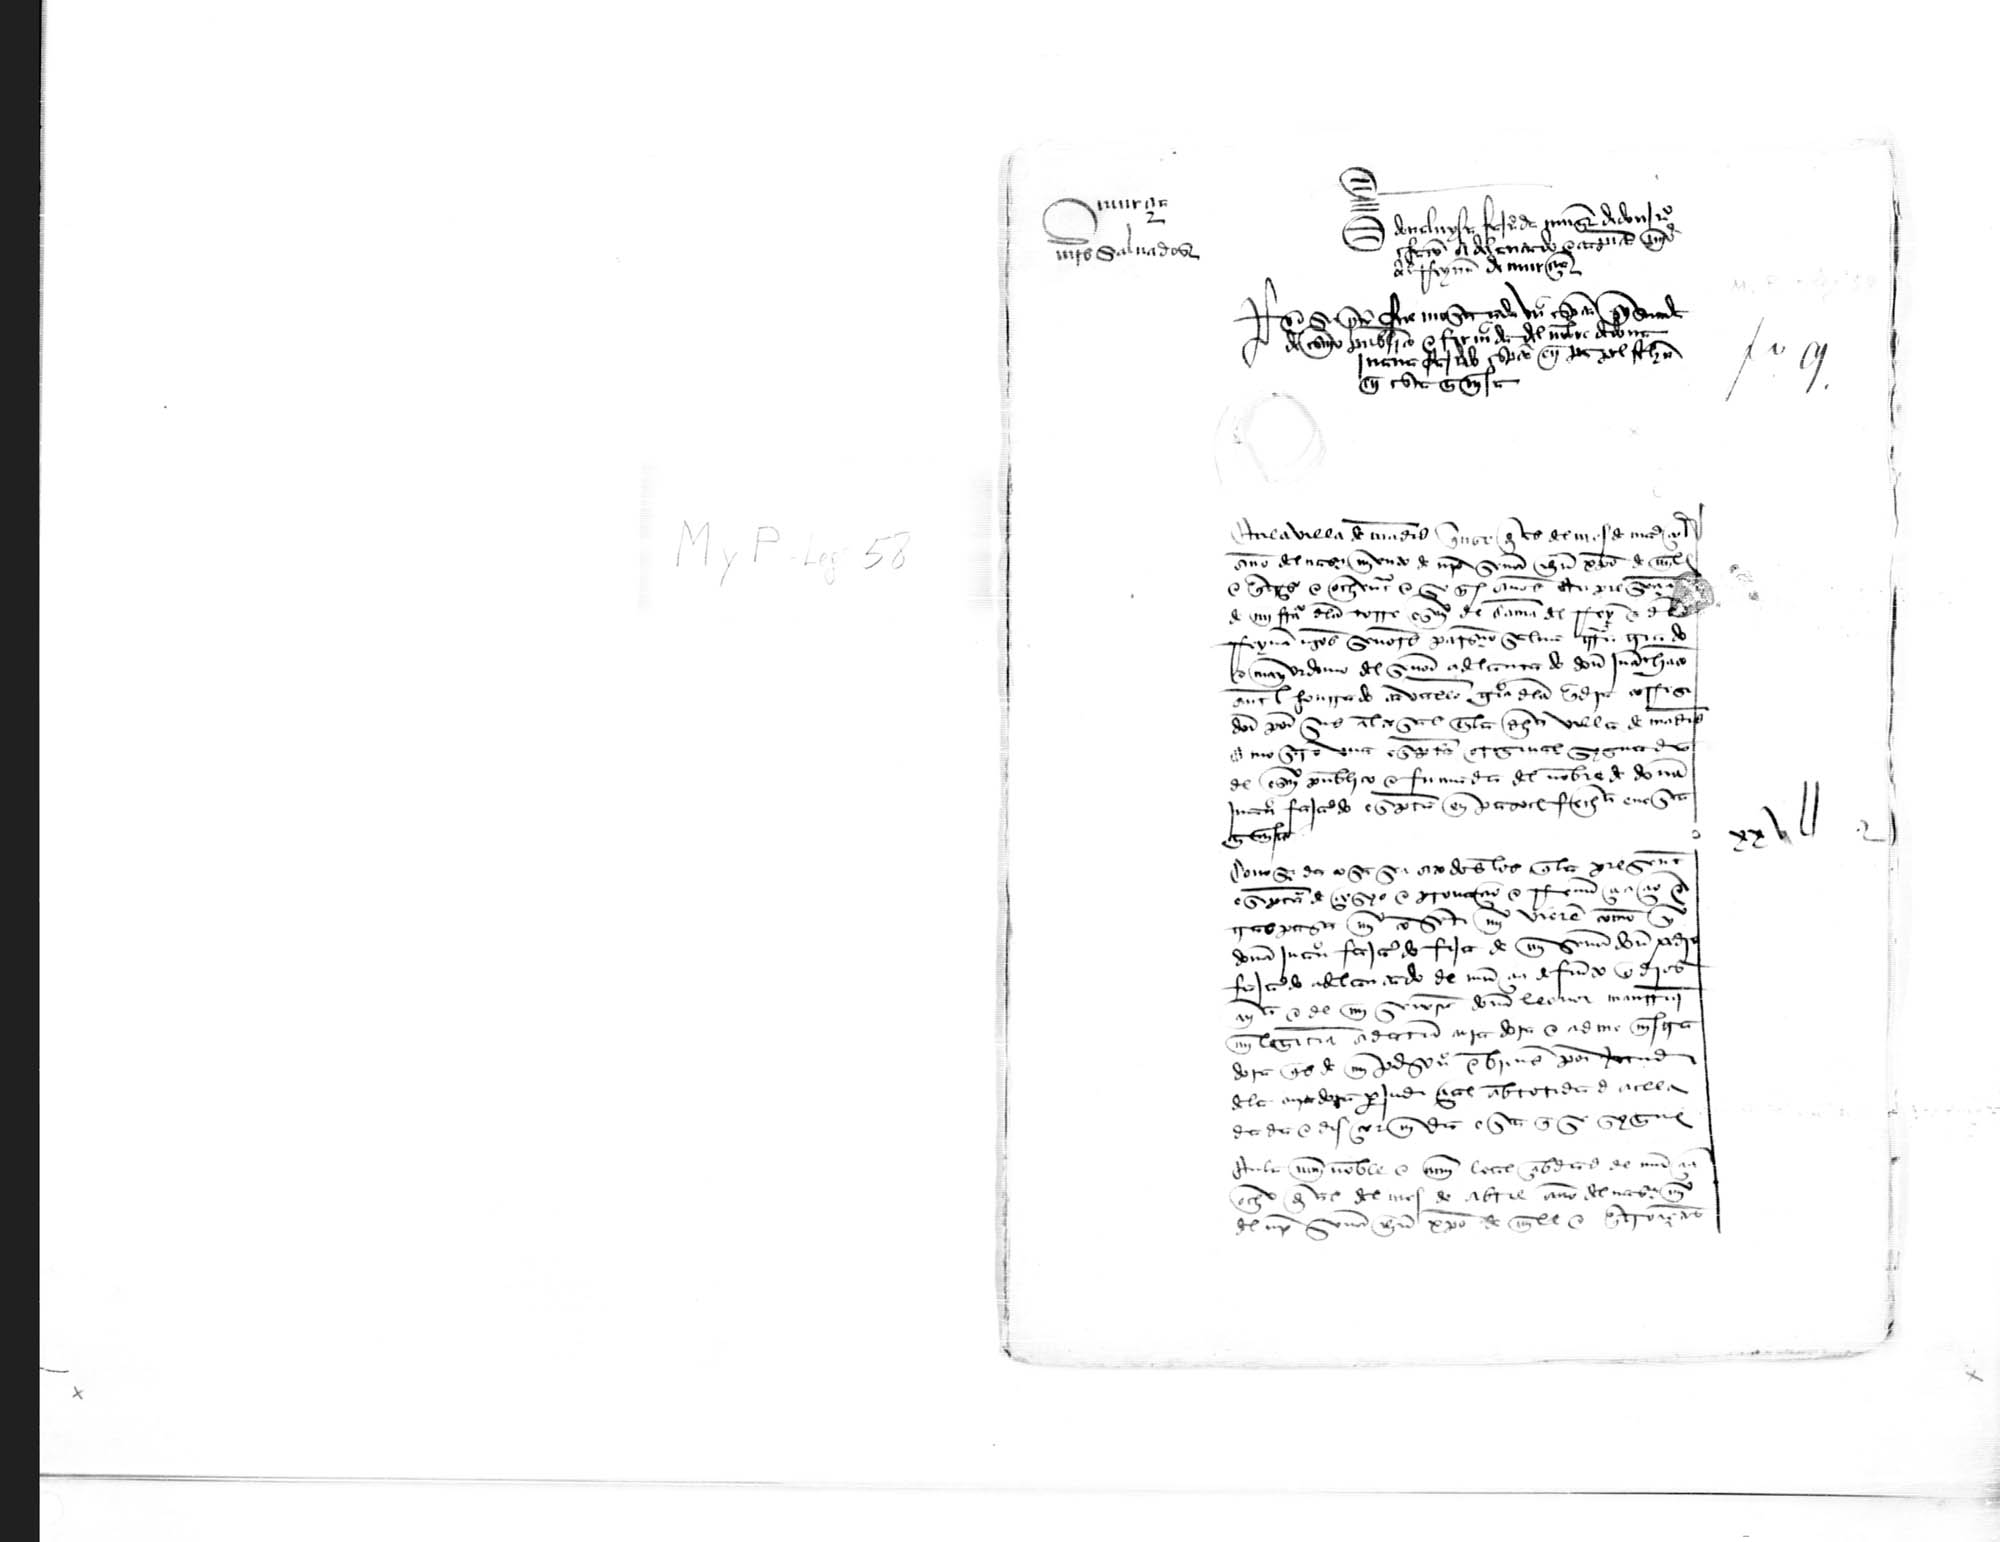 Testimonio de la validación hecha por García de la Cuadra, corregidor de Madrid, de varias escrituras presentadas por Salvatierra, criado y mayordomo de Juan Chacón.